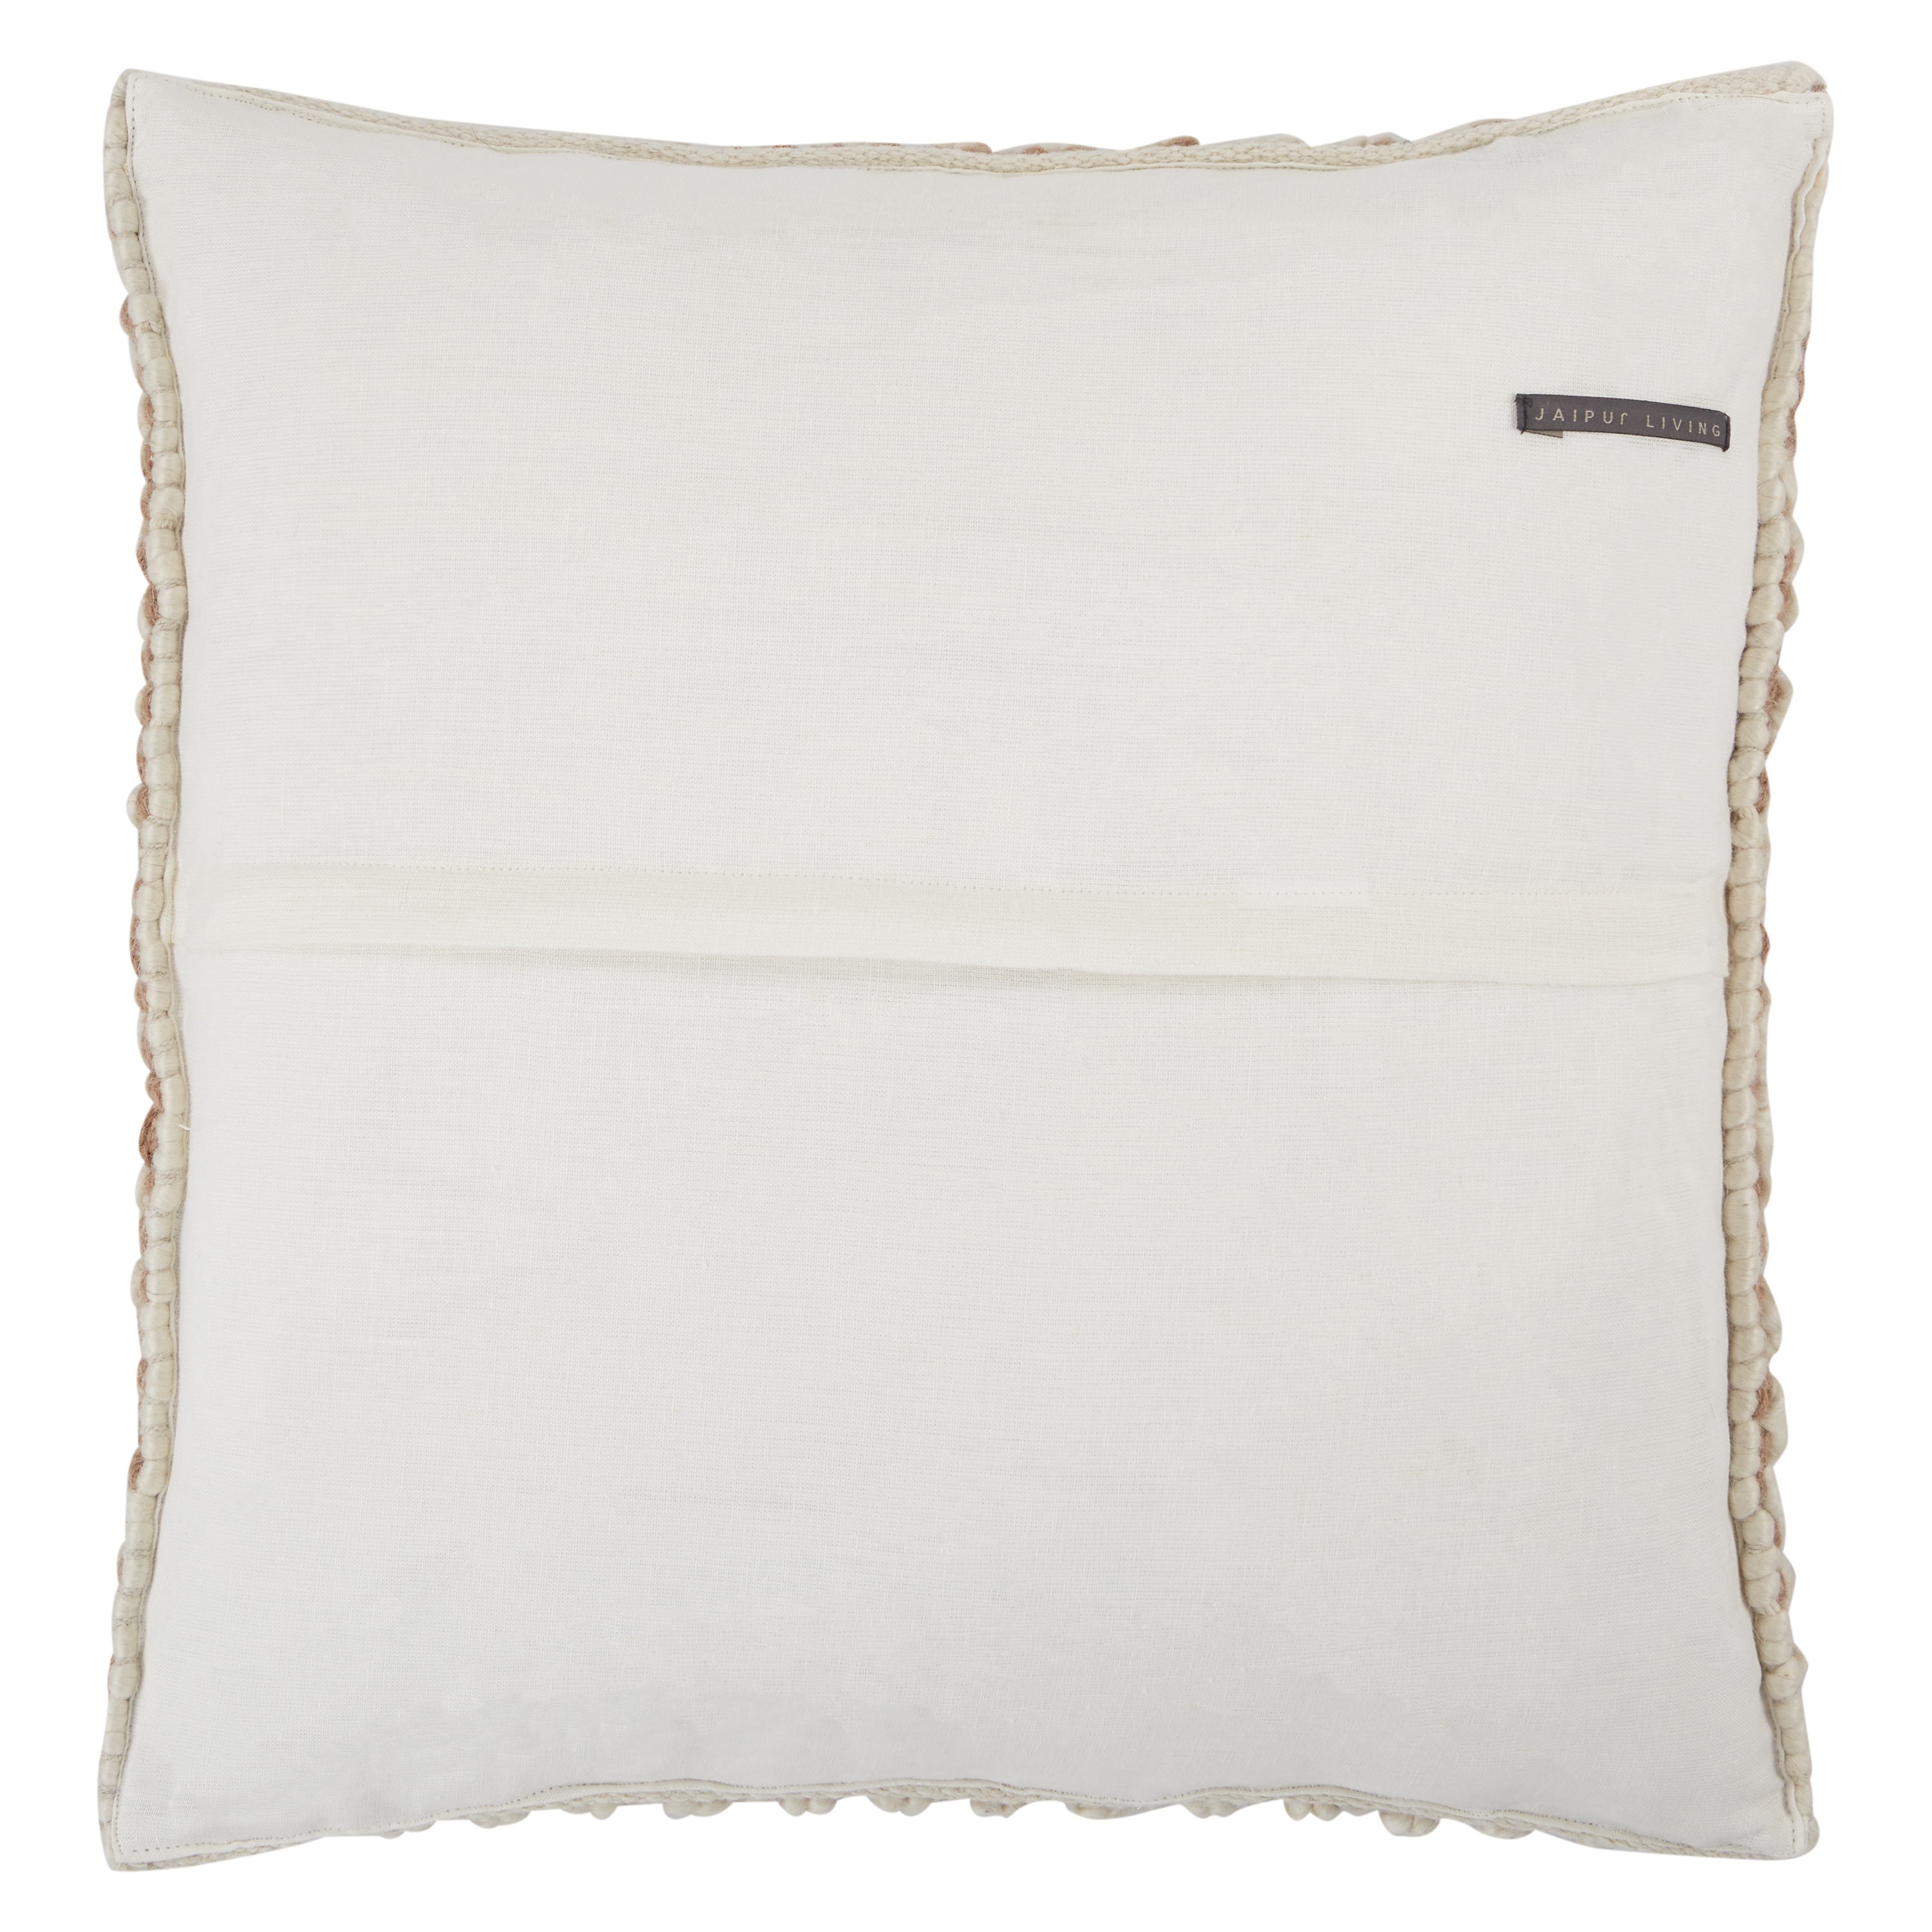 Design (US) Tan 22"X22" Pillow - Tan Ivory - Image 1